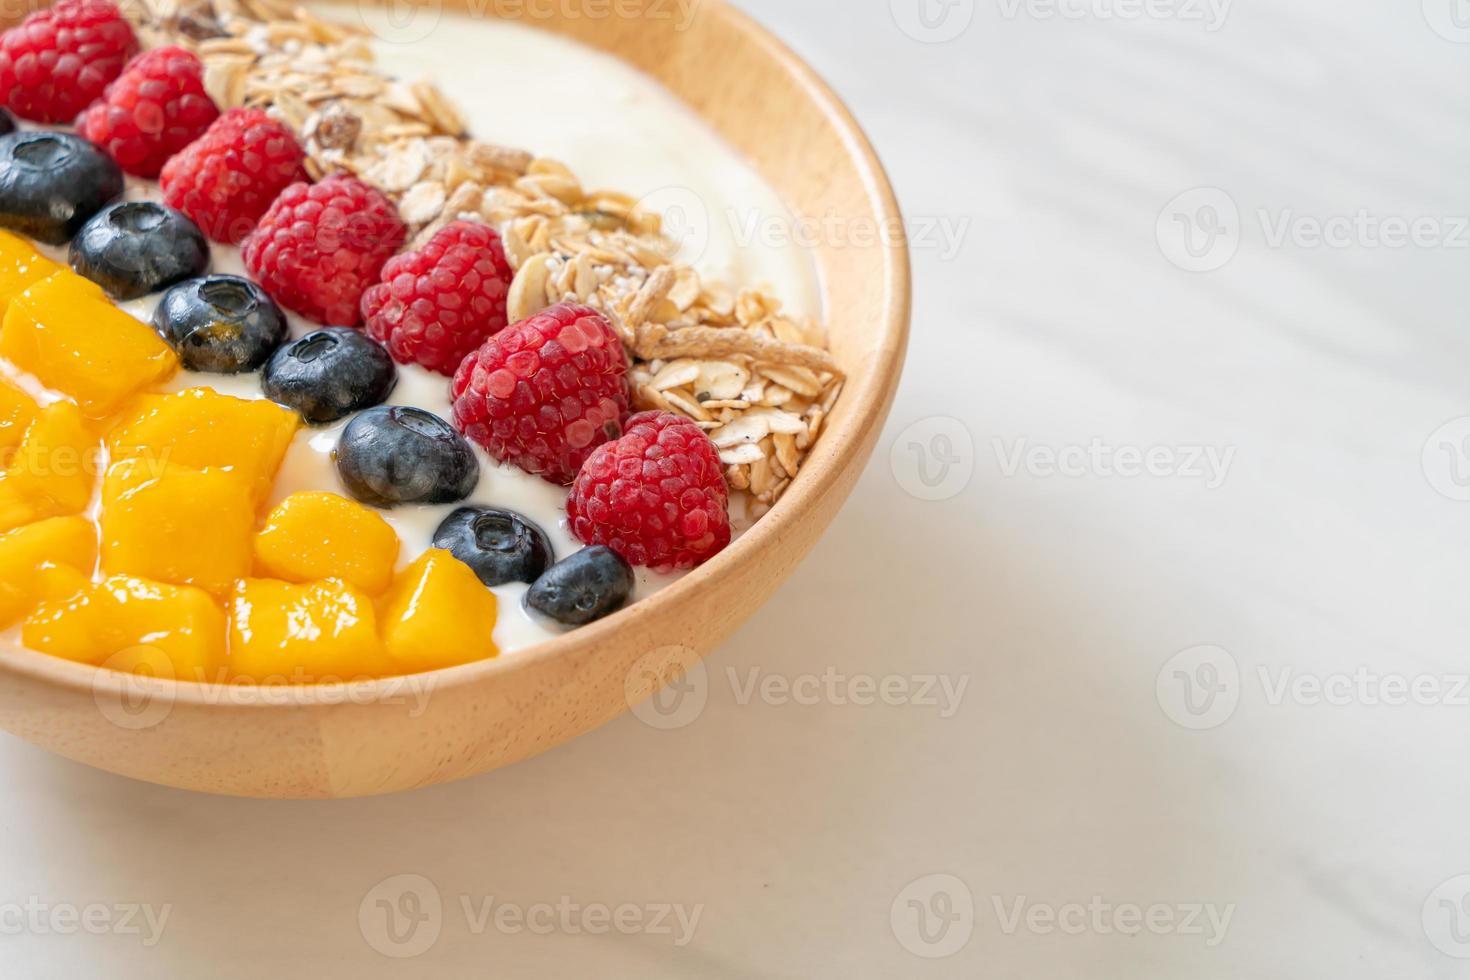 hemlagad yoghurtskål med hallon, blåbär, mango och granola - hälsosam matstil foto